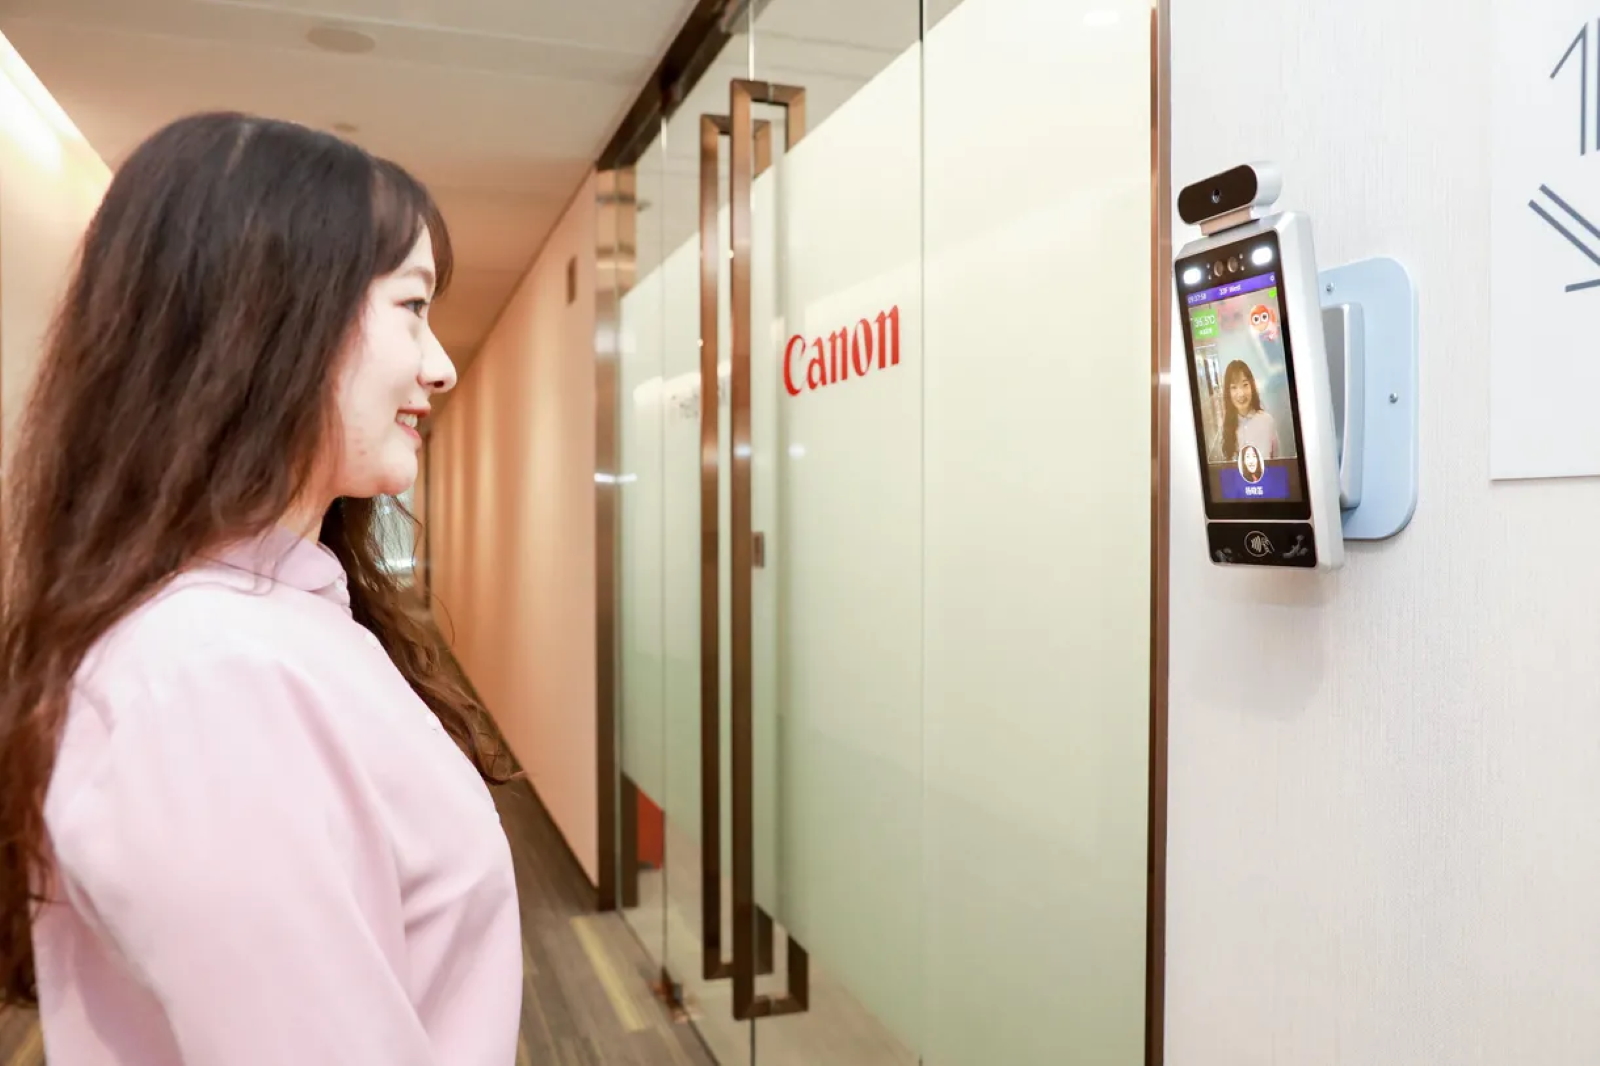 Un sourire pour entrer serait une façon d’apporter une ambiance positive au bureau selon la filiale chinoise de Canon. © Canon